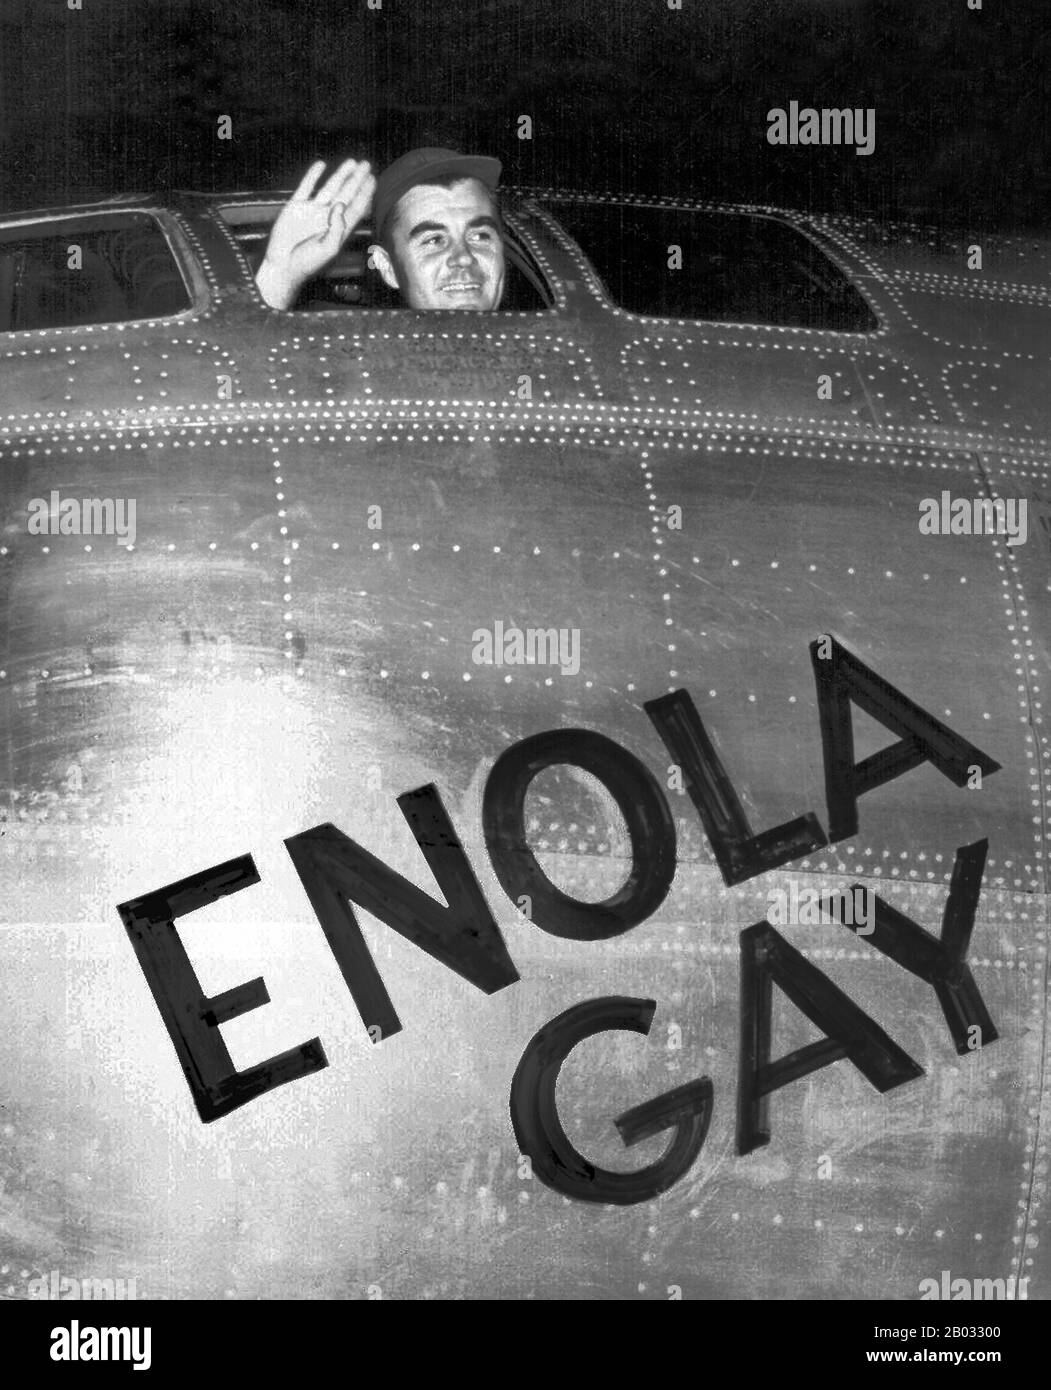 Die Enola Homosexuelle ist ein Boeing B-29 Superfortress Bomber, der für Enola Homosexuelle Tibbets, die Mutter des Piloten, Oberst Paul Tibbets, benannt wurde, der das Flugzeug auswählte, während es noch auf der Montagelinie war. August 1945, während der Endphase des zweiten Weltkriegs, wurde es das erste Flugzeug, das eine Atombombe ablegte. Die Bombe, die den Codenamen "Little Boy" trägt, war auf die Stadt Hiroshima in Japan gerichtet und verursachte eine beispiellose Zerstörung. Enola Schwule beteiligte sich am zweiten Atomangriff als Wetteraufklärer für das Primärziel Kokura. Wolken und treibender Rauch führten zu Nagasaki B. Stockfoto